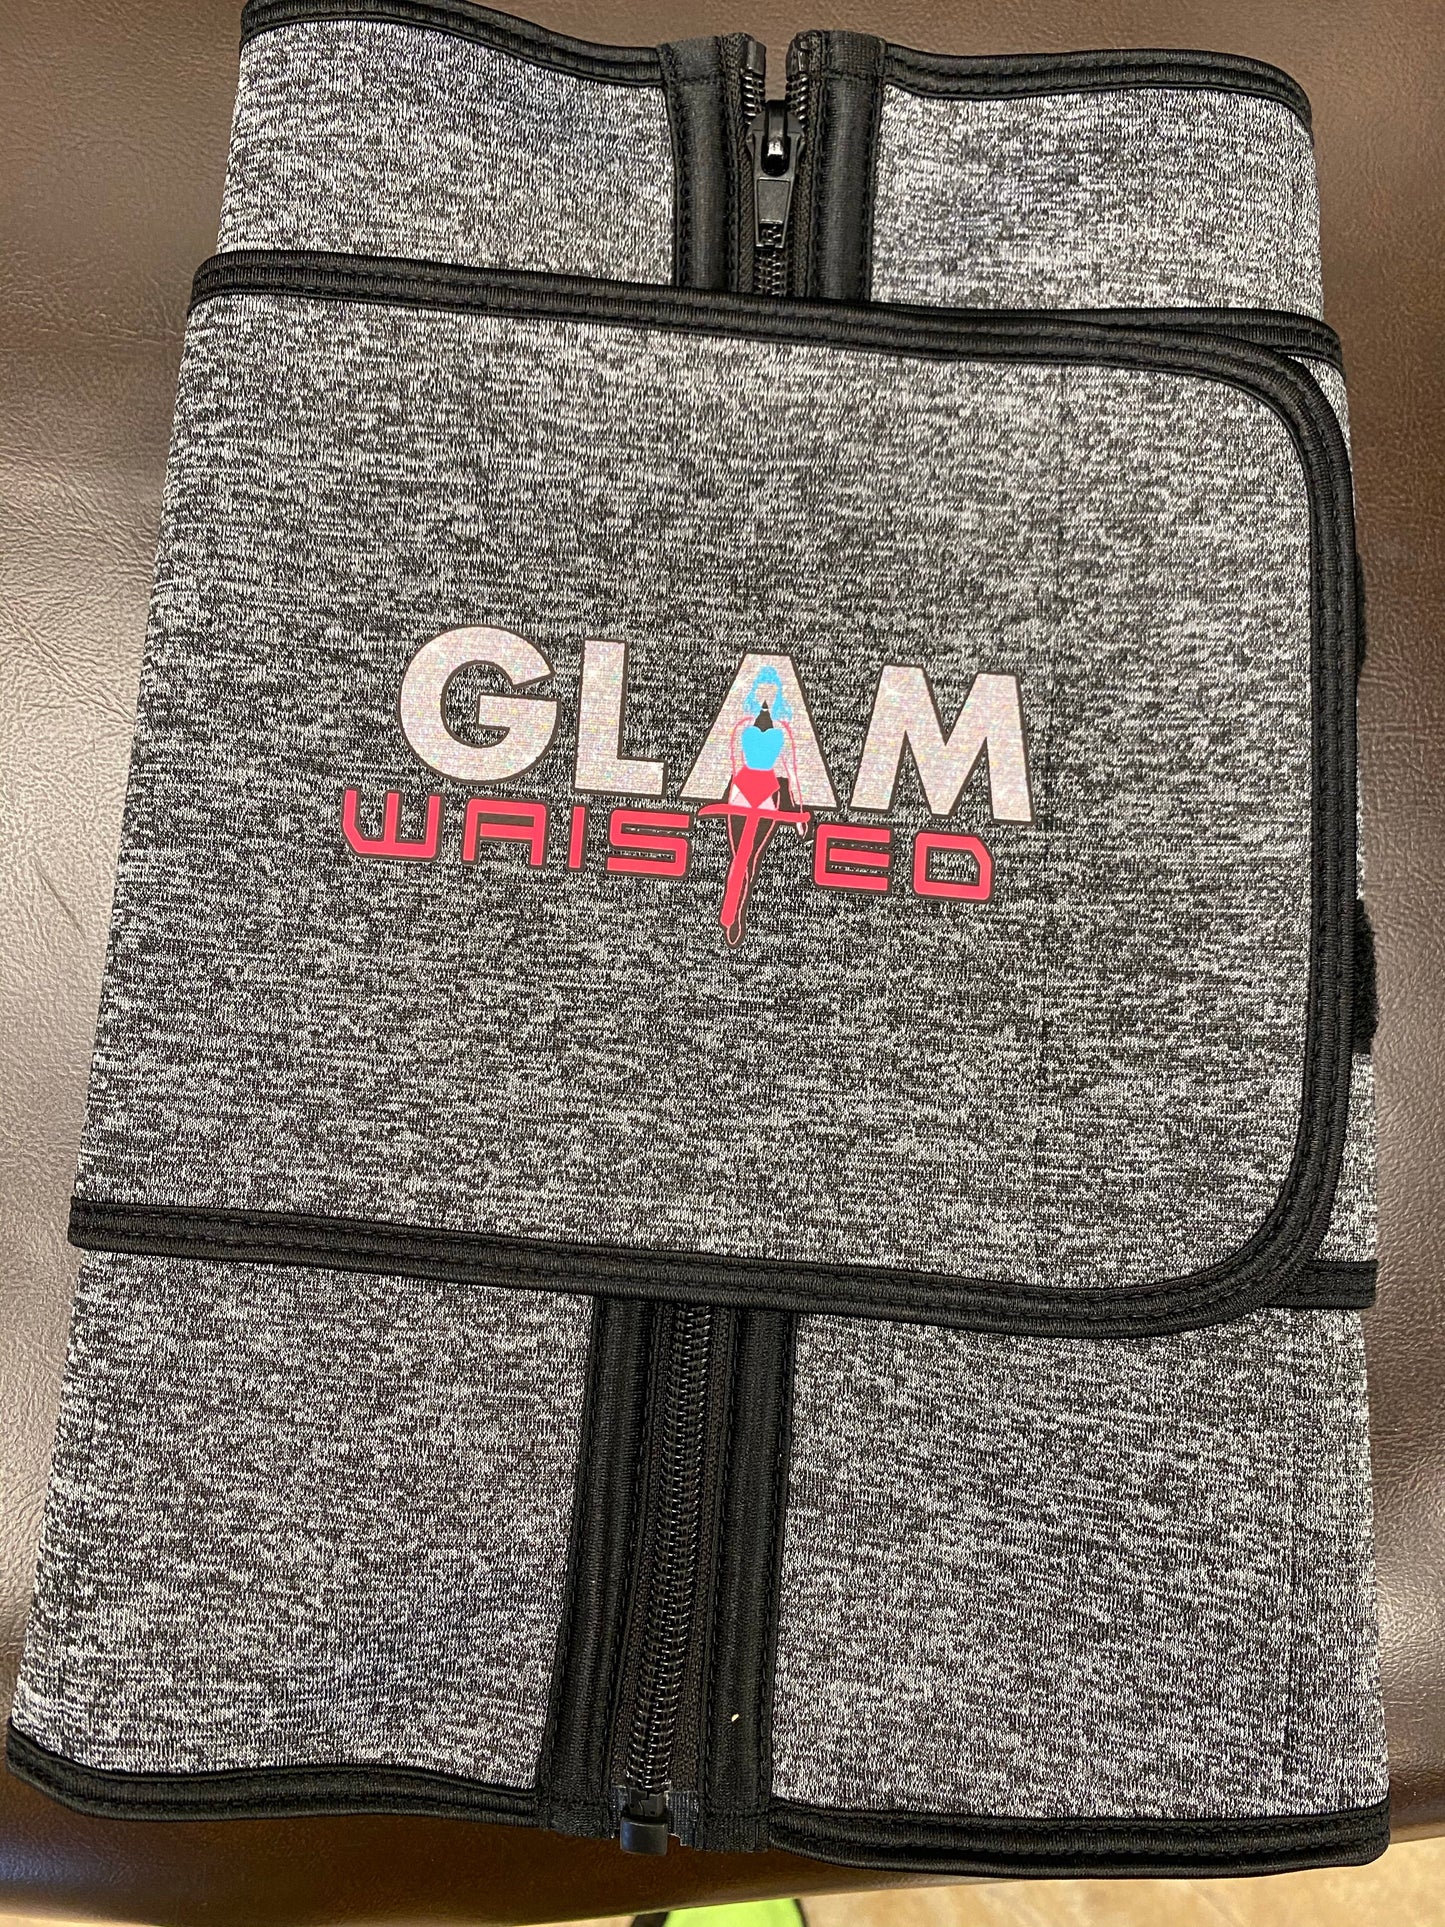 Glam Waisted 1 strap Waist Trainer - Glambella Shop